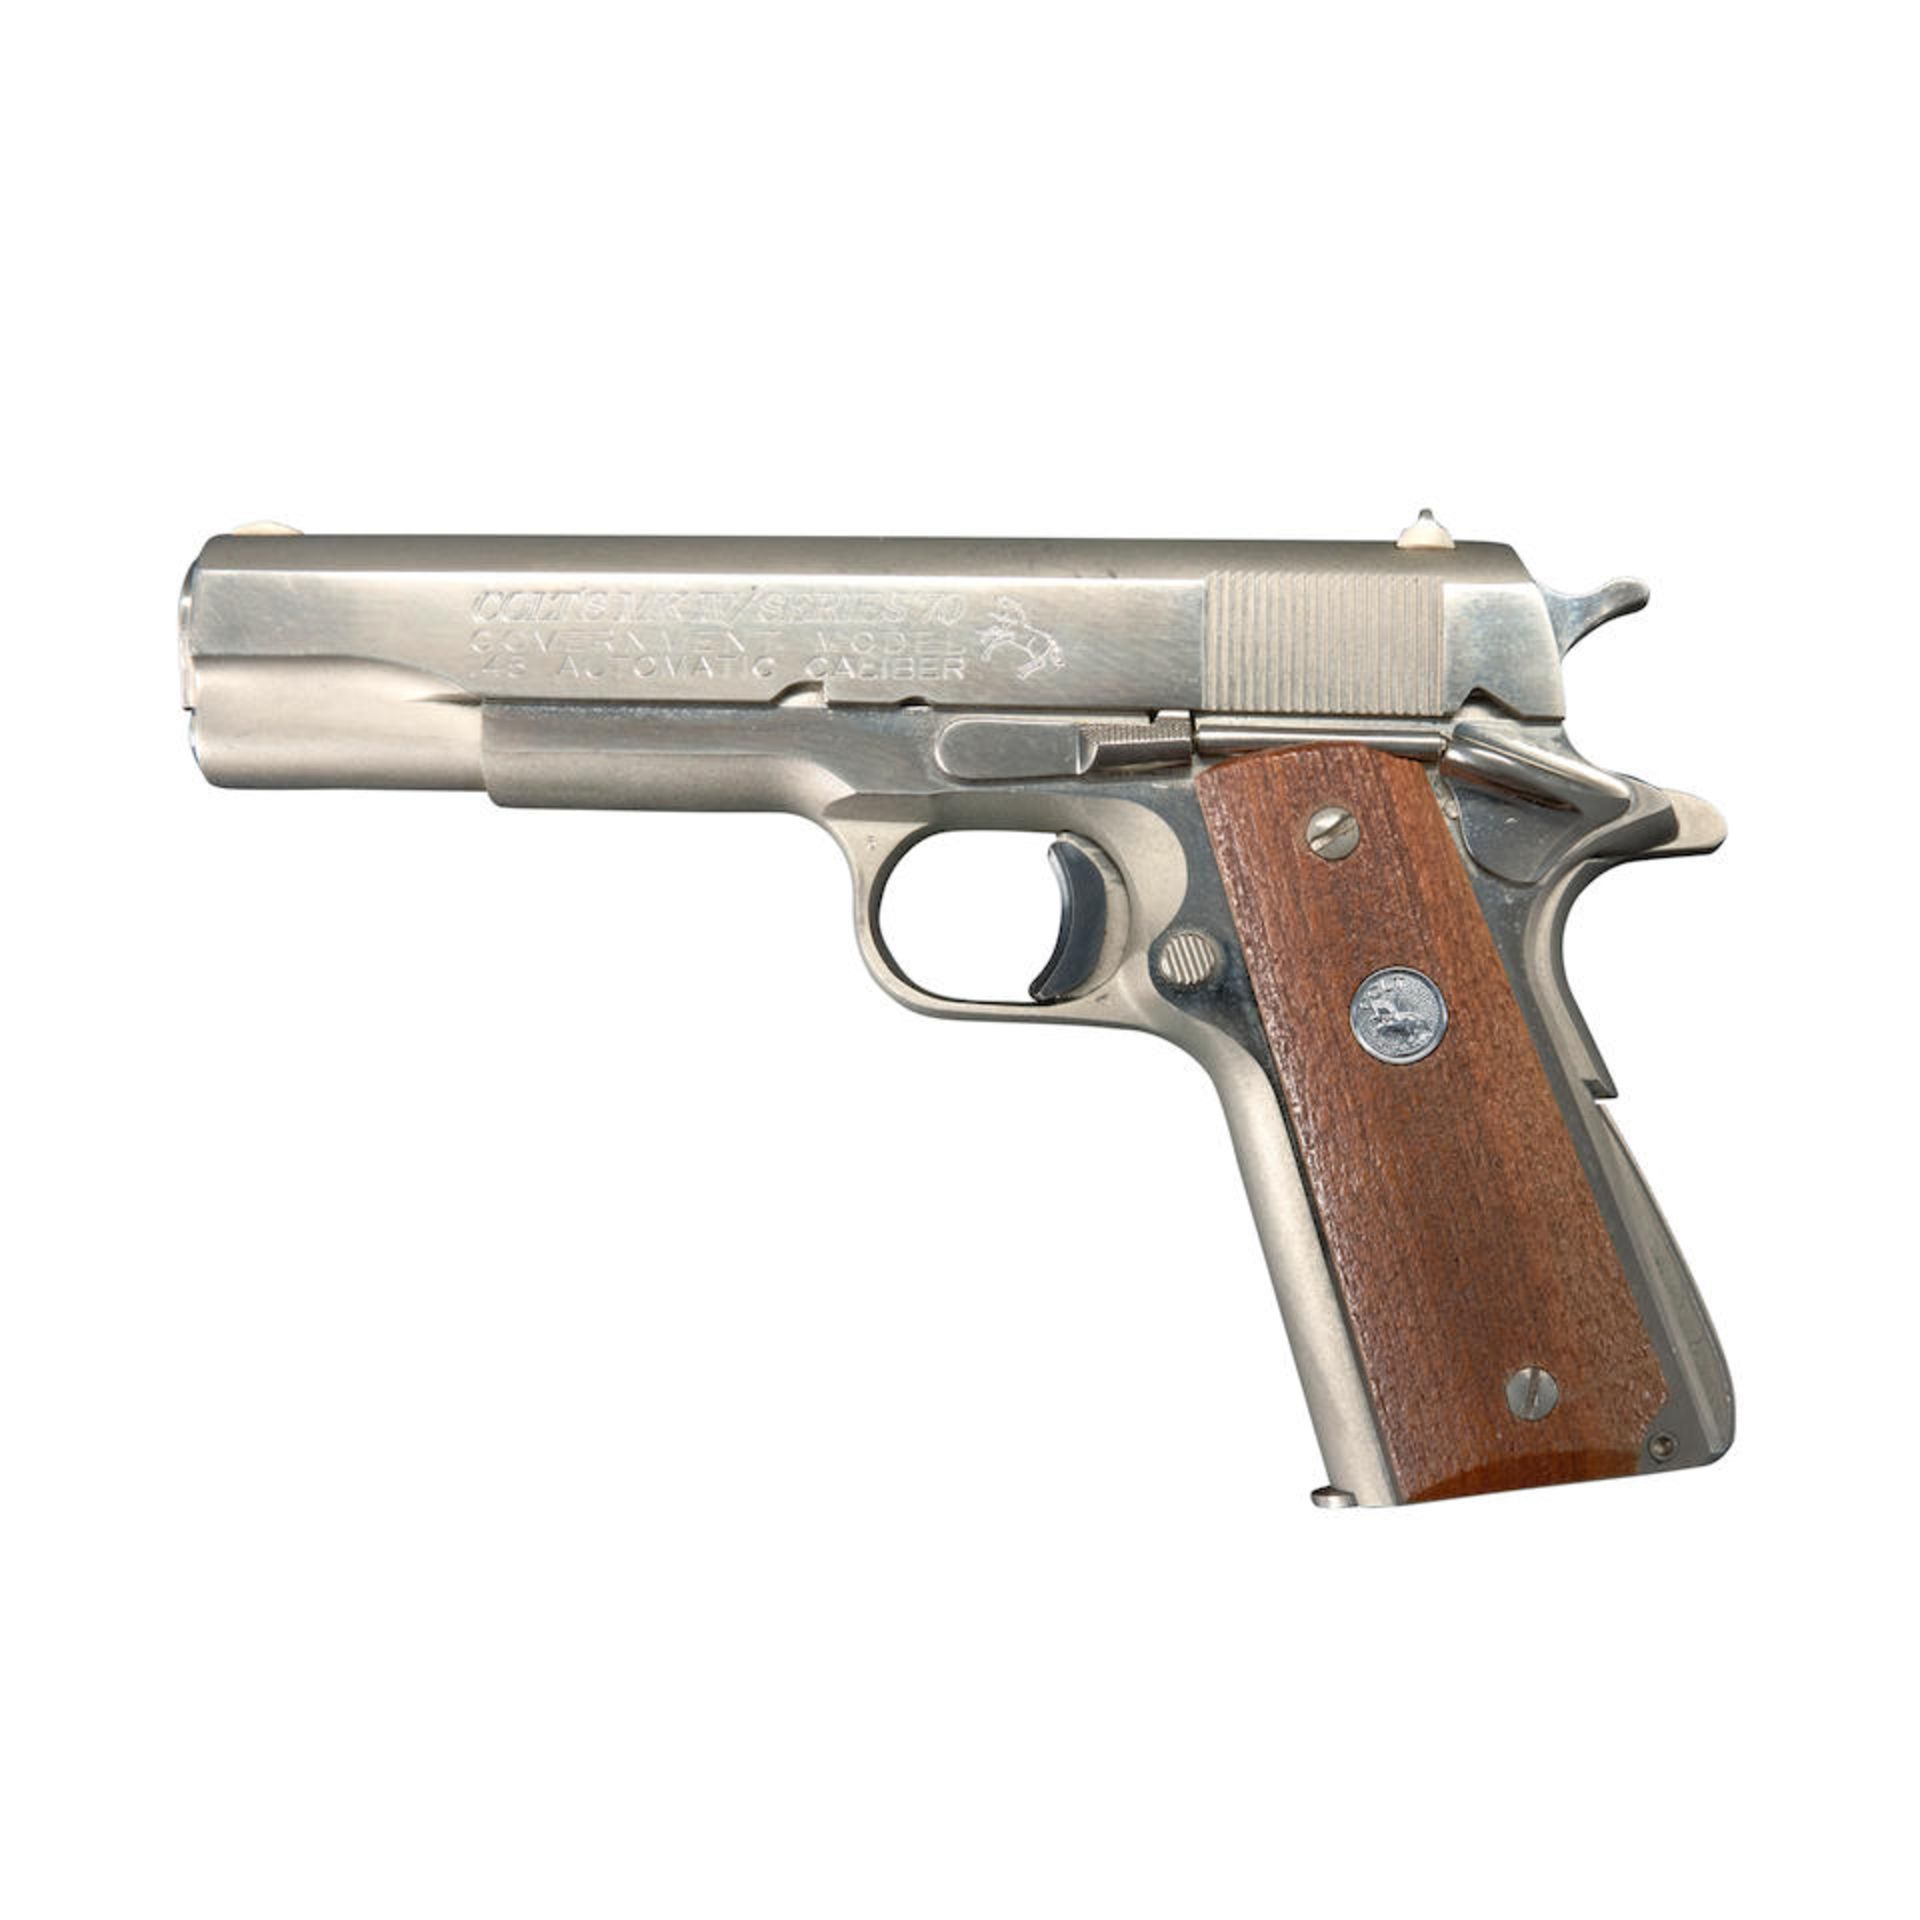 Colt MK IV/Series 70 Government Model Semi-Automatic Pistol, Curio or Relic firearm - Bild 3 aus 4